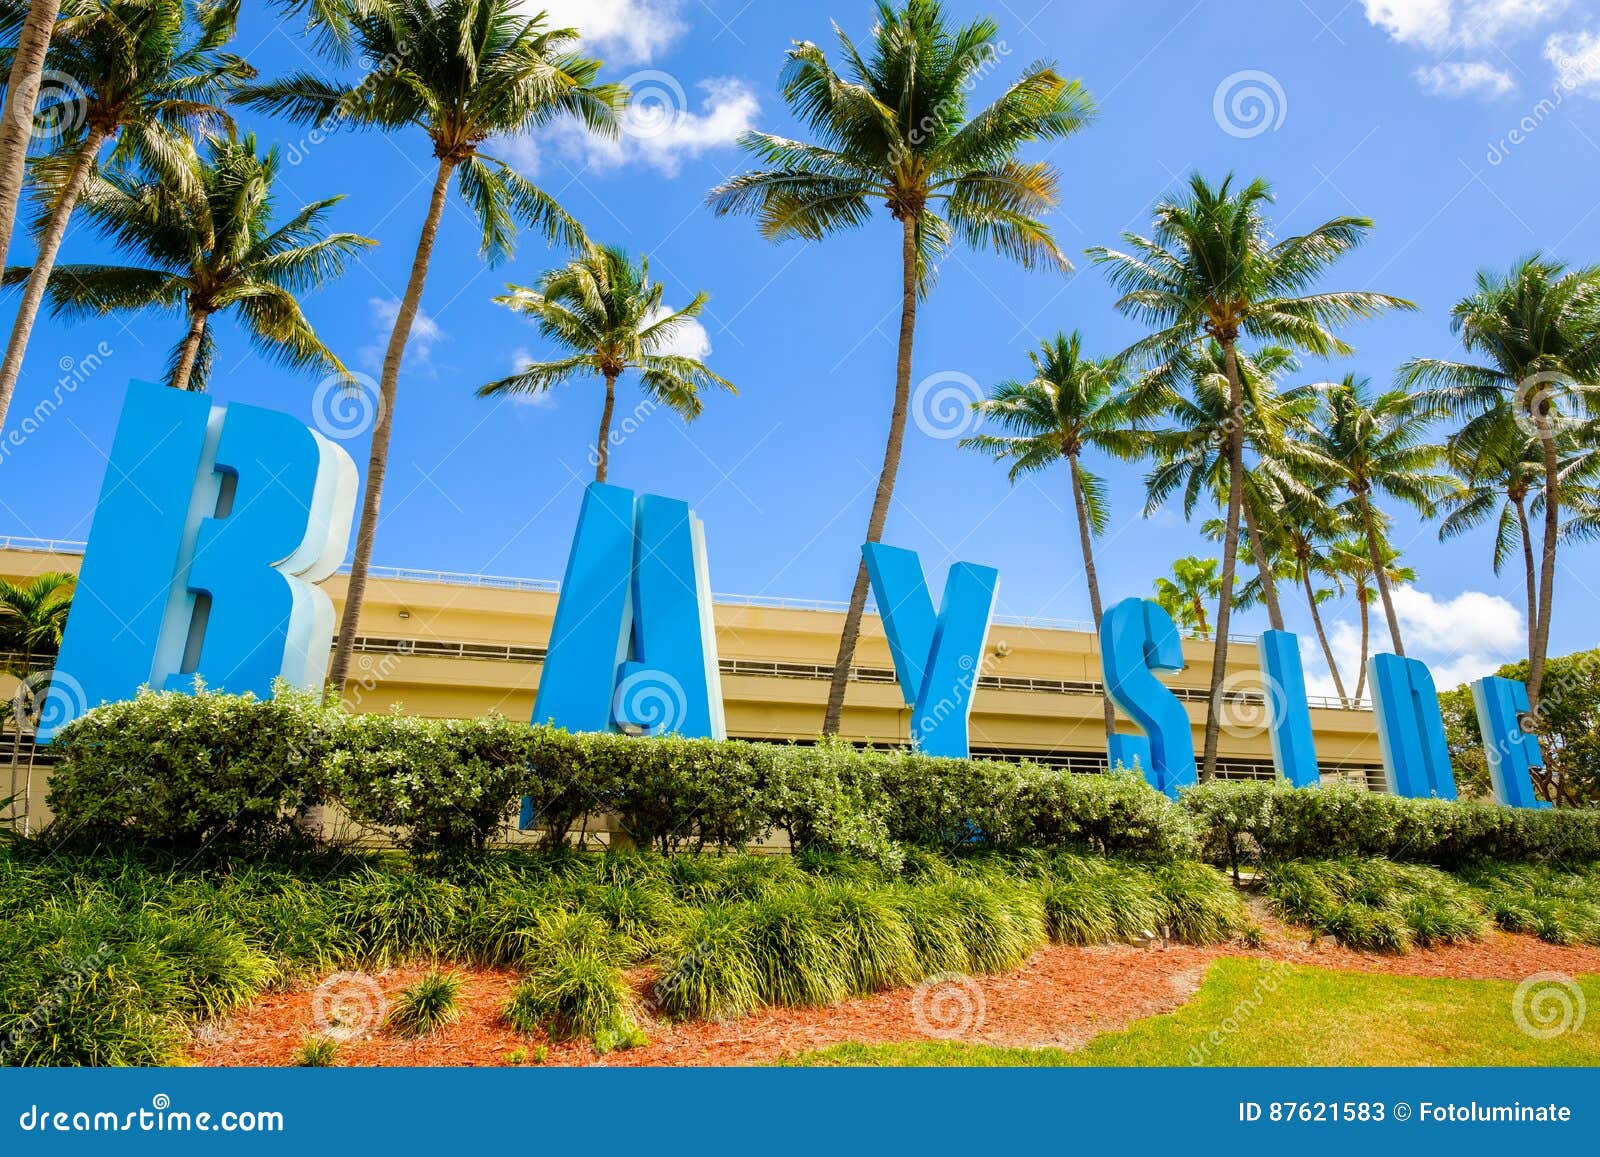 Miami Fl Tourist Attractions